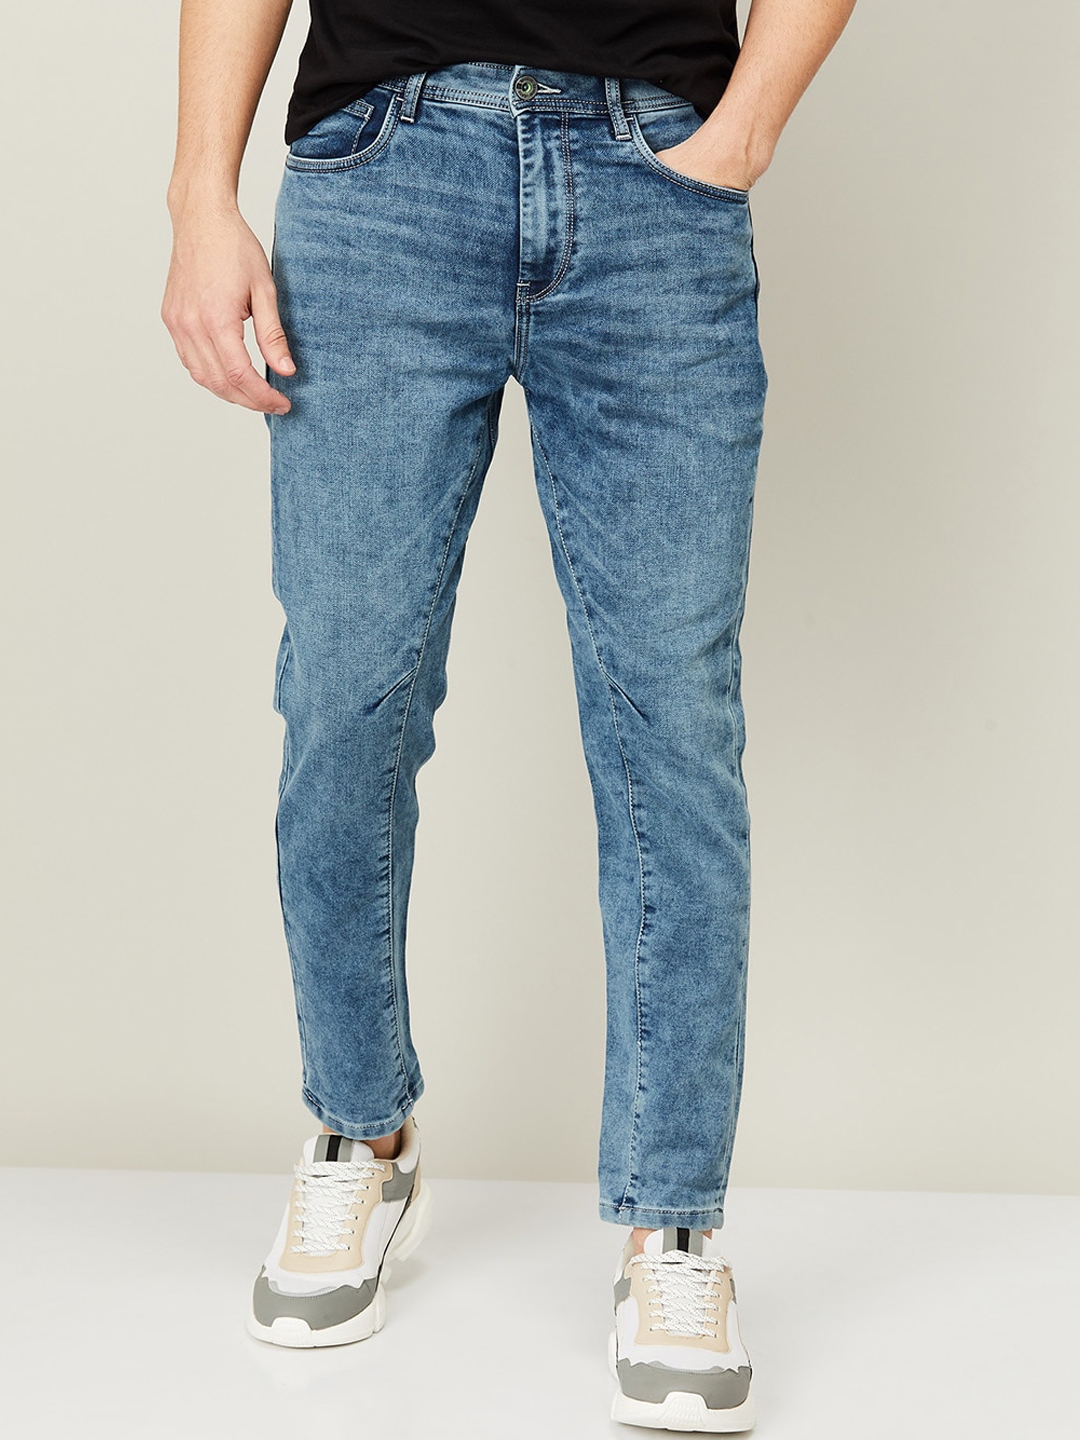 Buy Bossini Men Blue Skinny Fit Heavy Fade Jeans - Jeans for Men ...